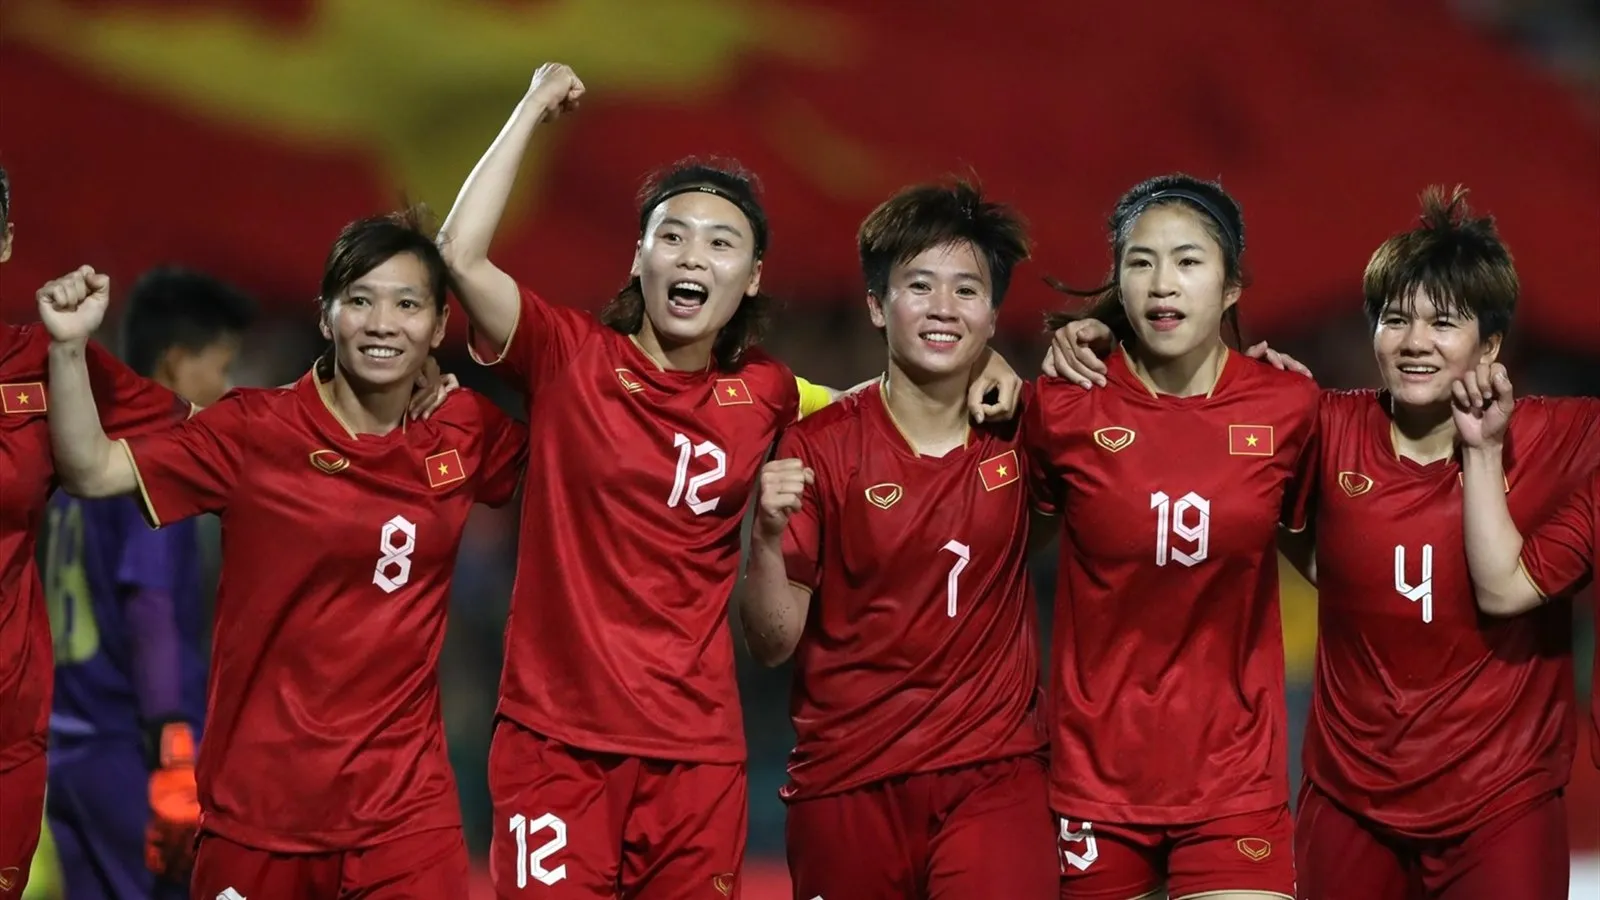 TRỰC TIẾP Tuyển nữ Việt Nam 0-0 Tuyển nữ Nepal: HLV Mai Đức Chung thay người (Hiệp 2)